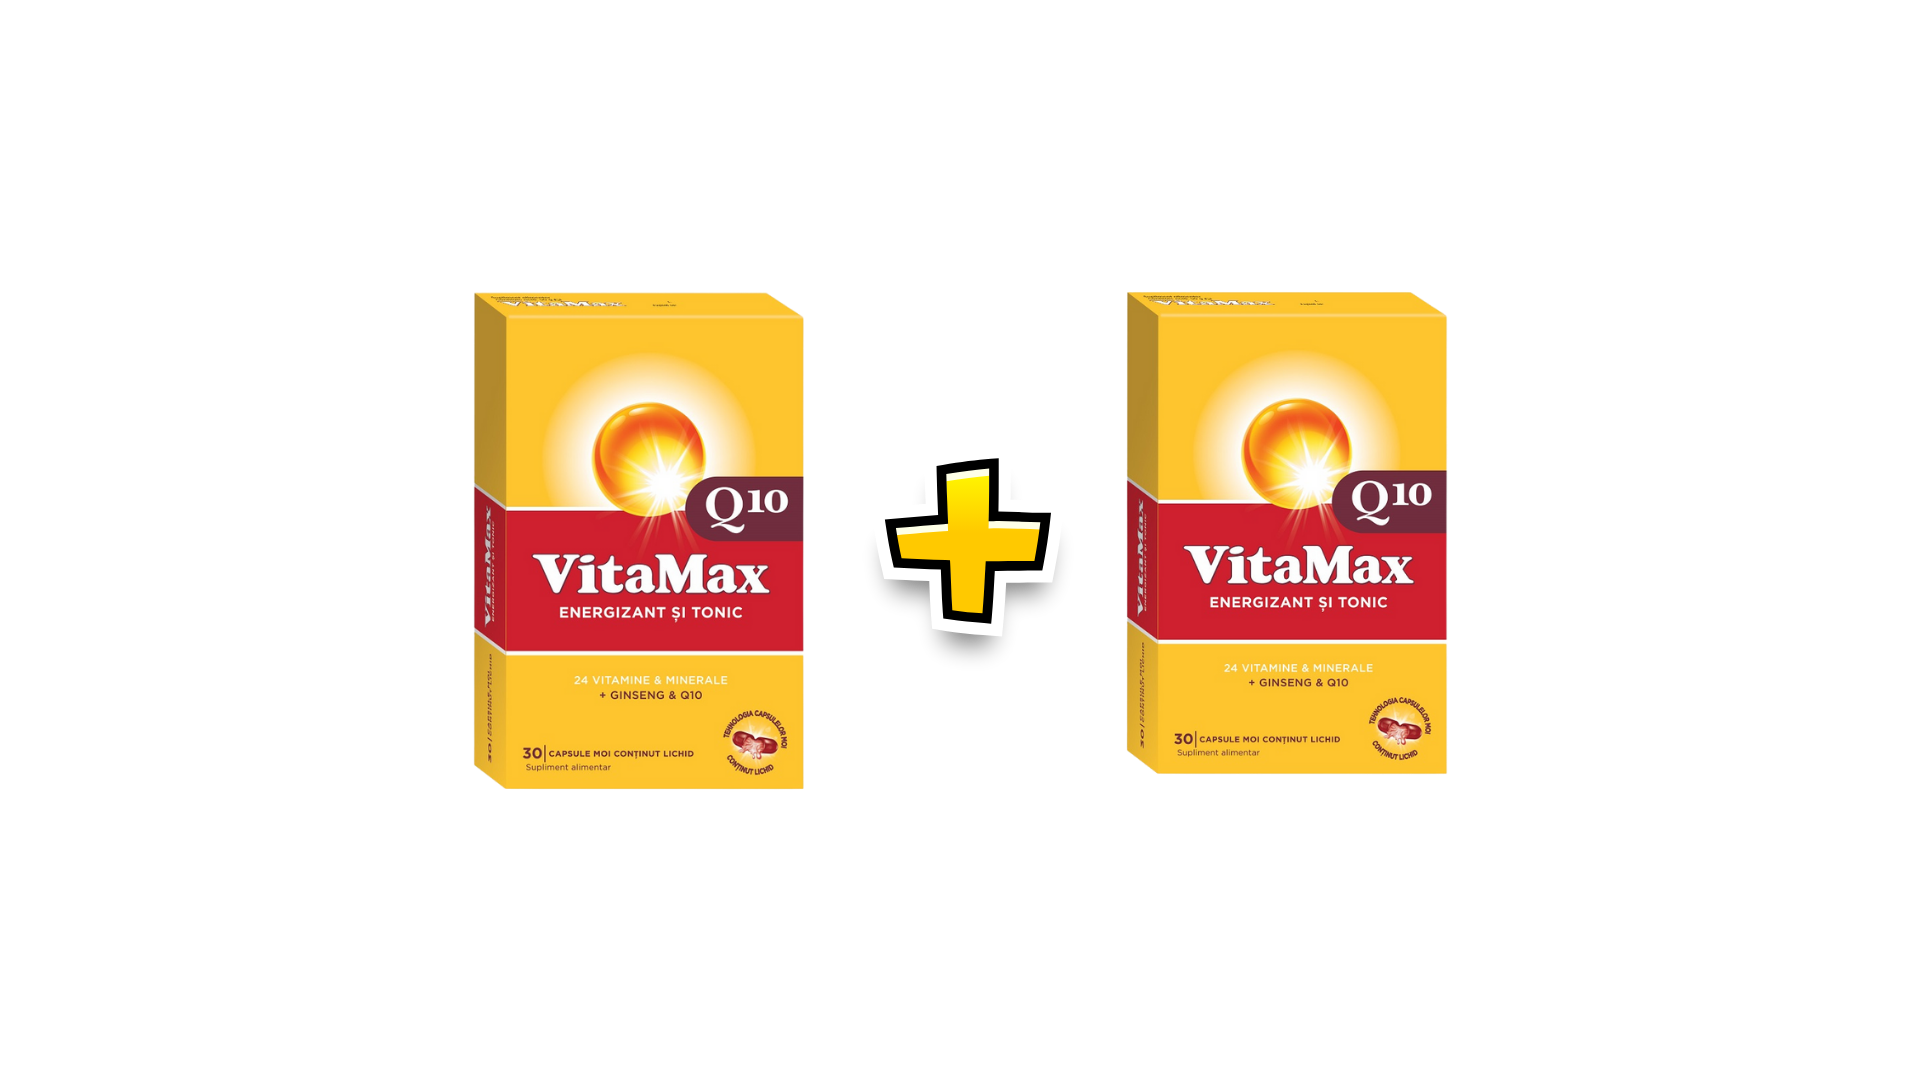 Imunitate - Pachet Vitamax Q10, 30+30 capsule, Perrigo, nordpharm.ro